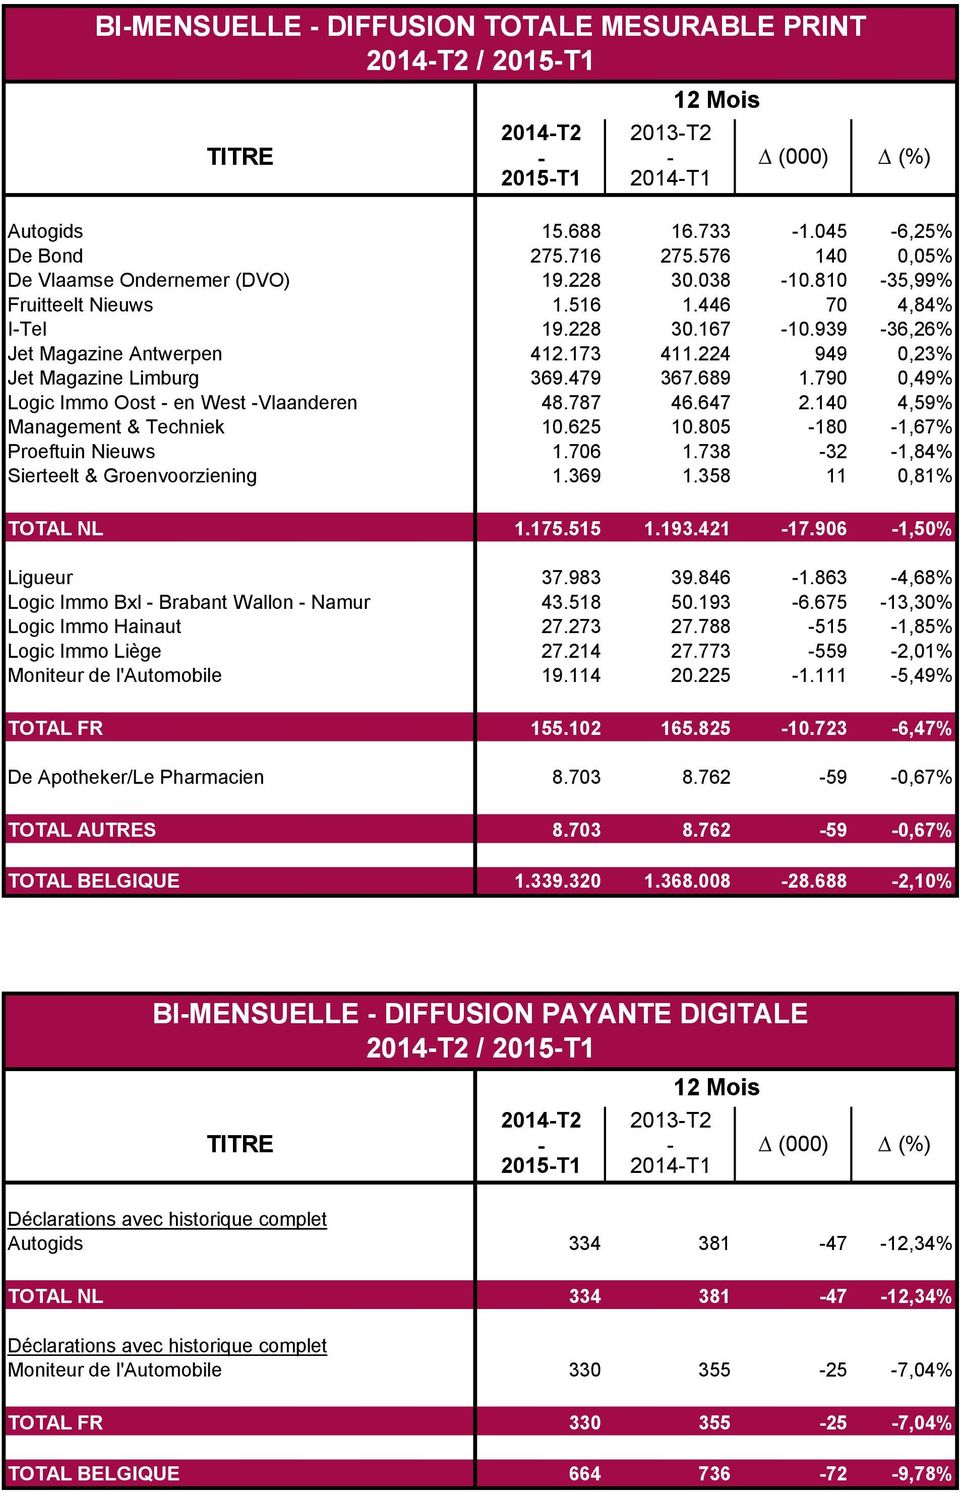 790 0,49% Logic Immo Oost - en West -Vlaanderen 48.787 46.647 2.140 4,59% Management & Techniek 10.625 10.805-180 -1,67% Proeftuin Nieuws 1.706 1.738-32 -1,84% Sierteelt & Groenvoorziening 1.369 1.